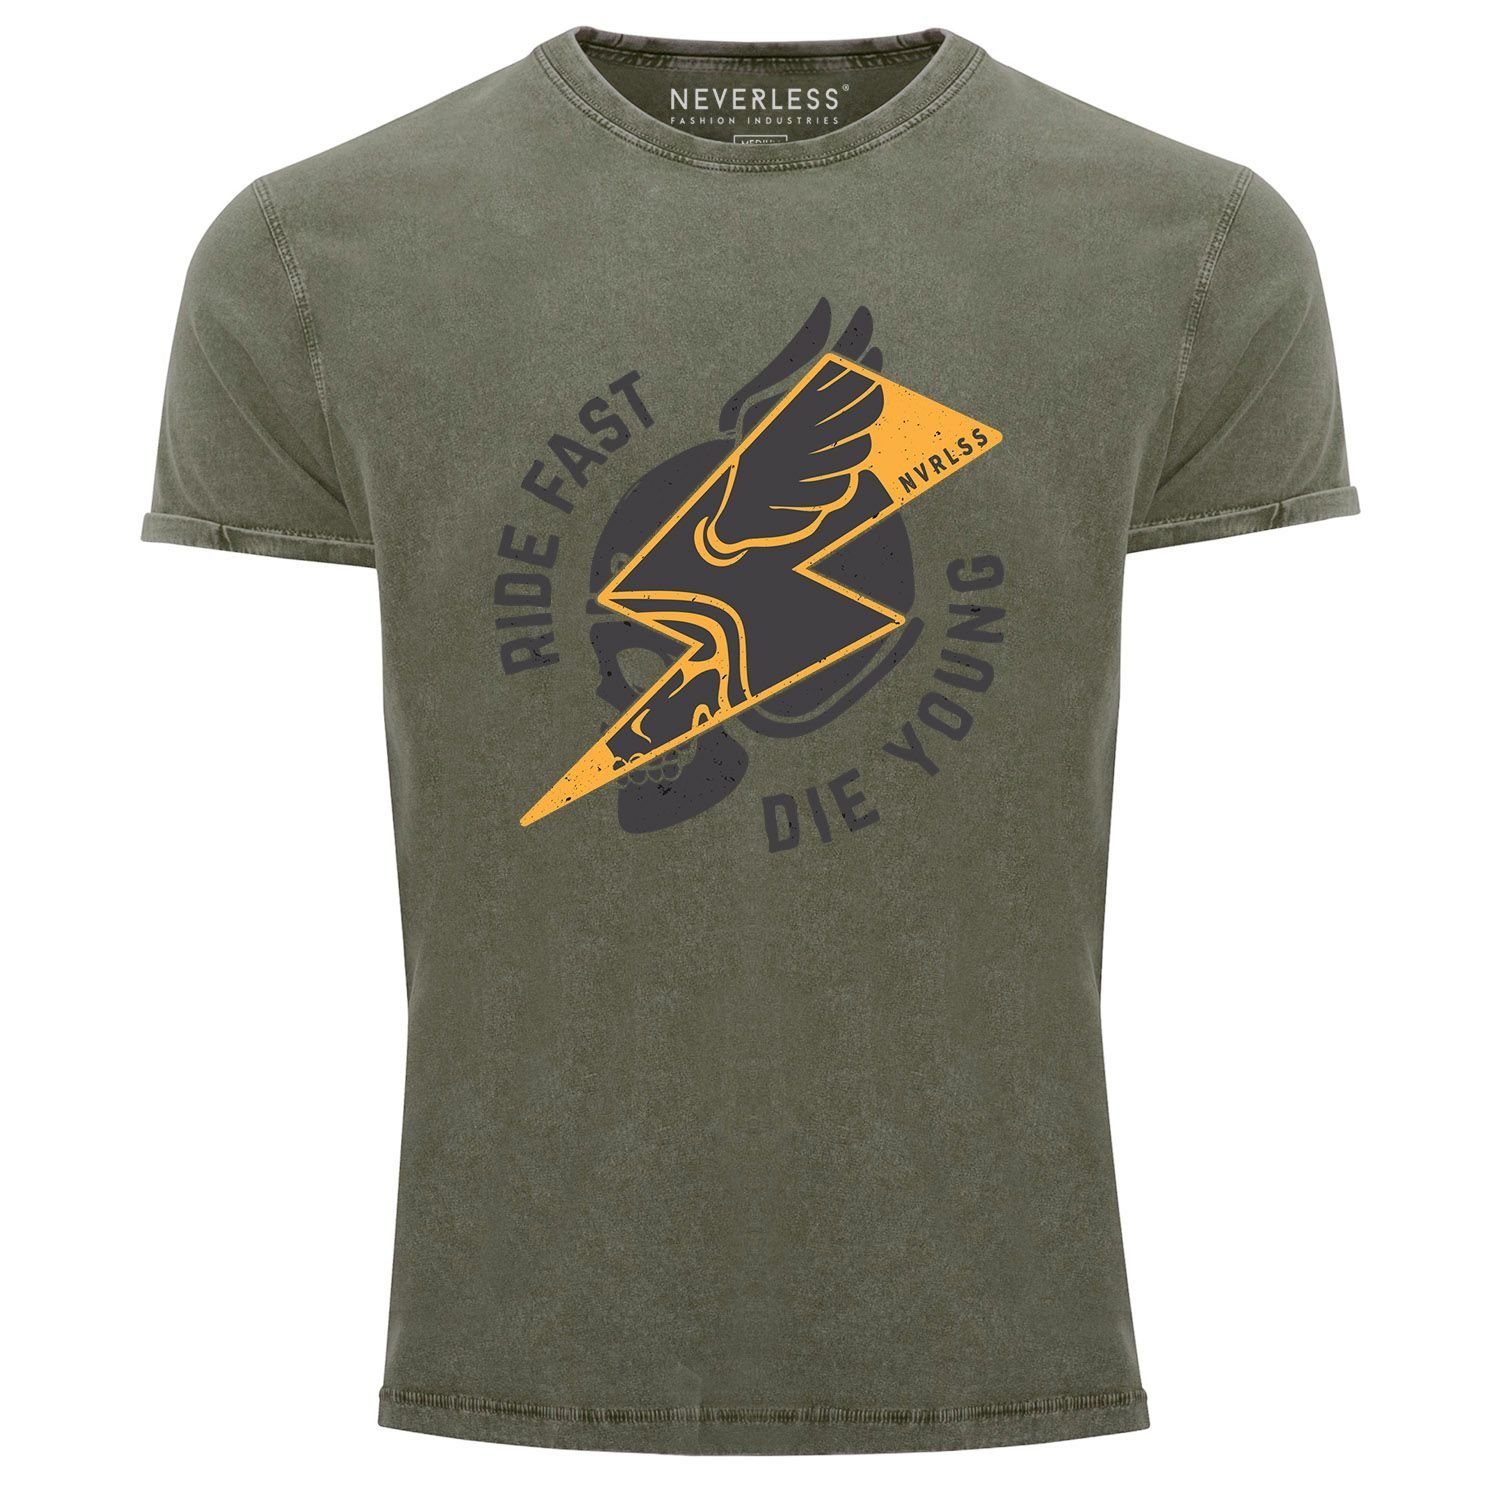 Herren Shirts Neverless Print-Shirt Neverless® Herren T-Shirt Vintage Shirt Printshirt Rocker Biker Spruch Motiv Ride fast die y